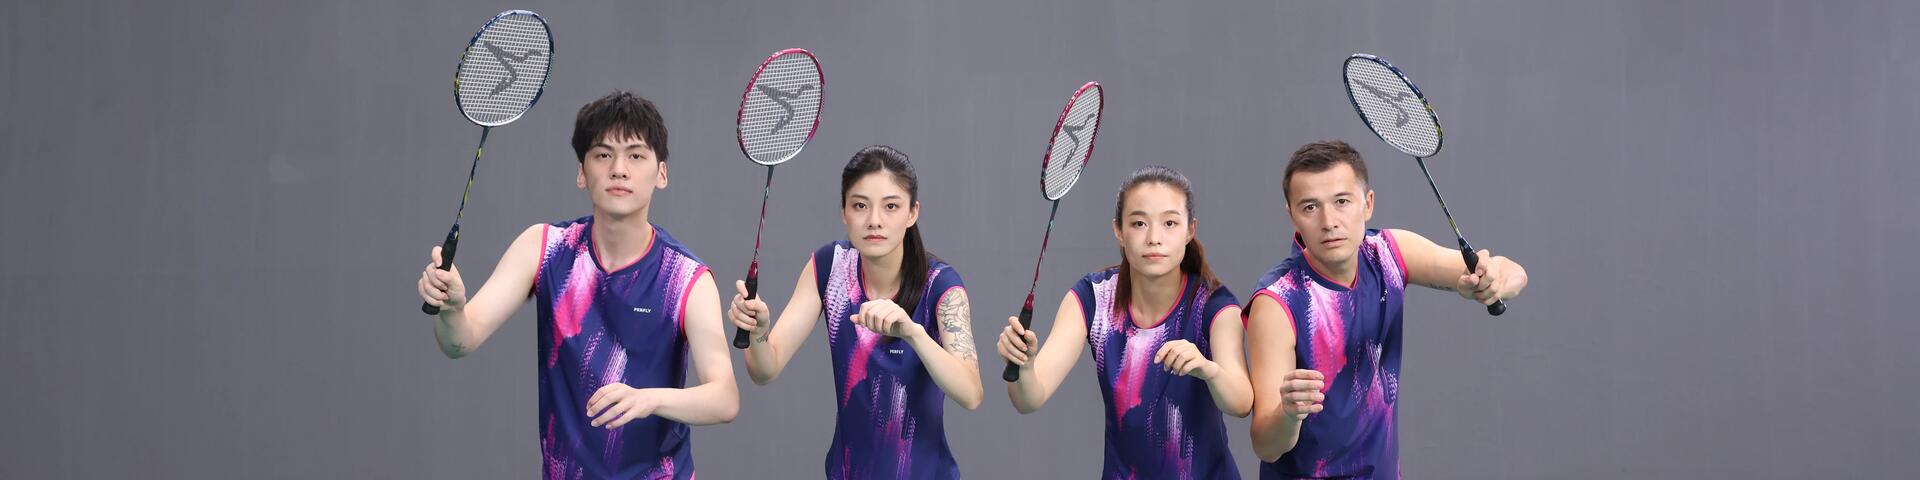 zawodnicy trzymający w rękach uniesione rakiety do badmintona